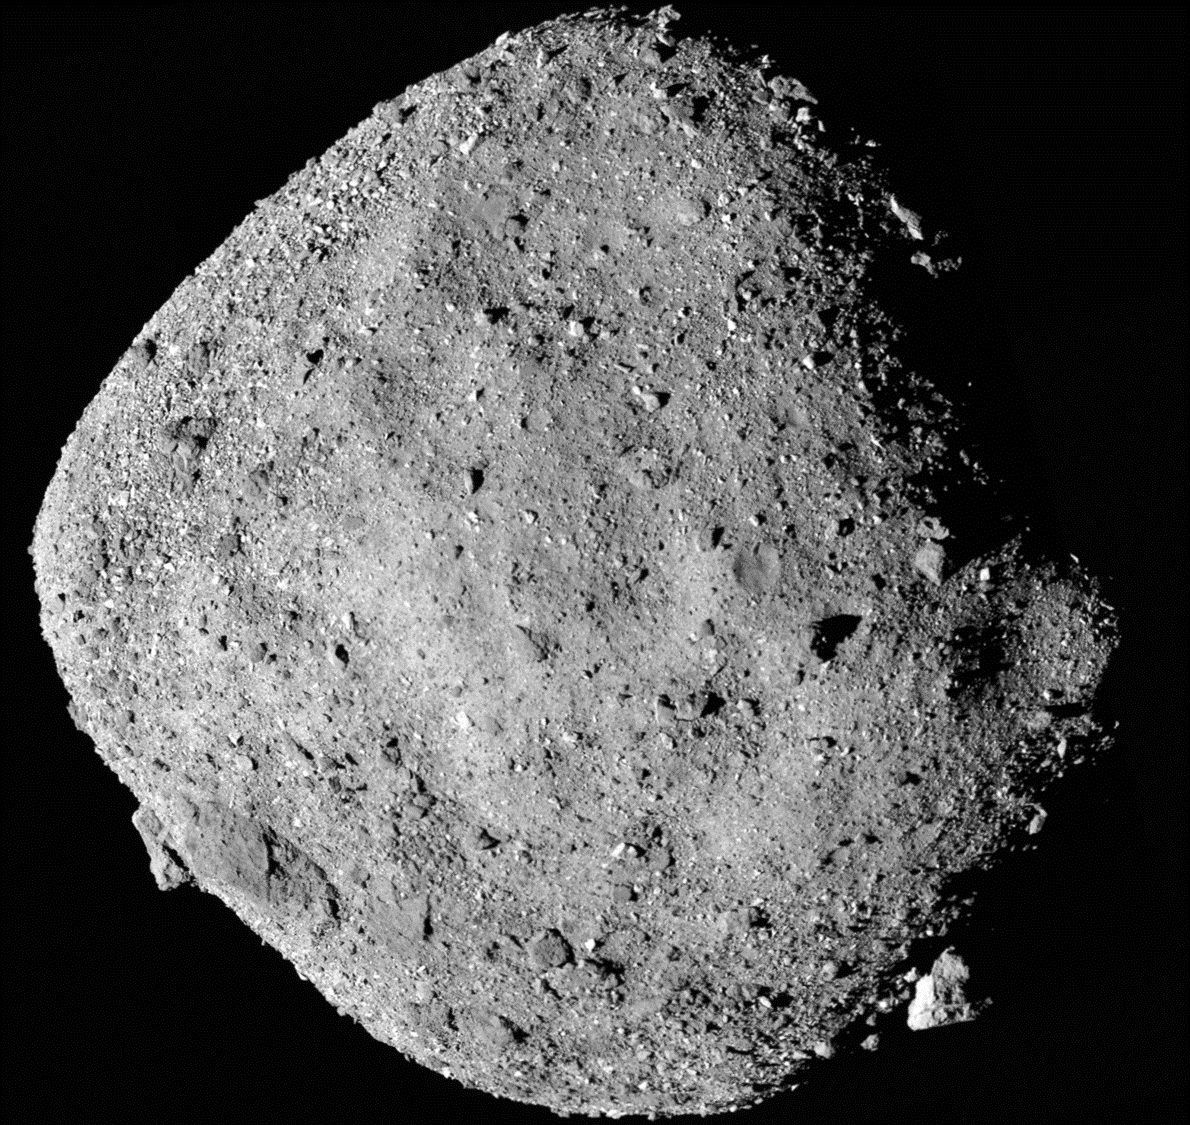 Landung auf einer durchs All rasenden Stecknadel: 2020 holte sich die Raumsonde "OSIRIS-Rex" eine Probe von dem knapp 500 Meter großen Asteroiden Bennu und startete zurück zur Erde. 2022 wird sie zurückerwartet. 